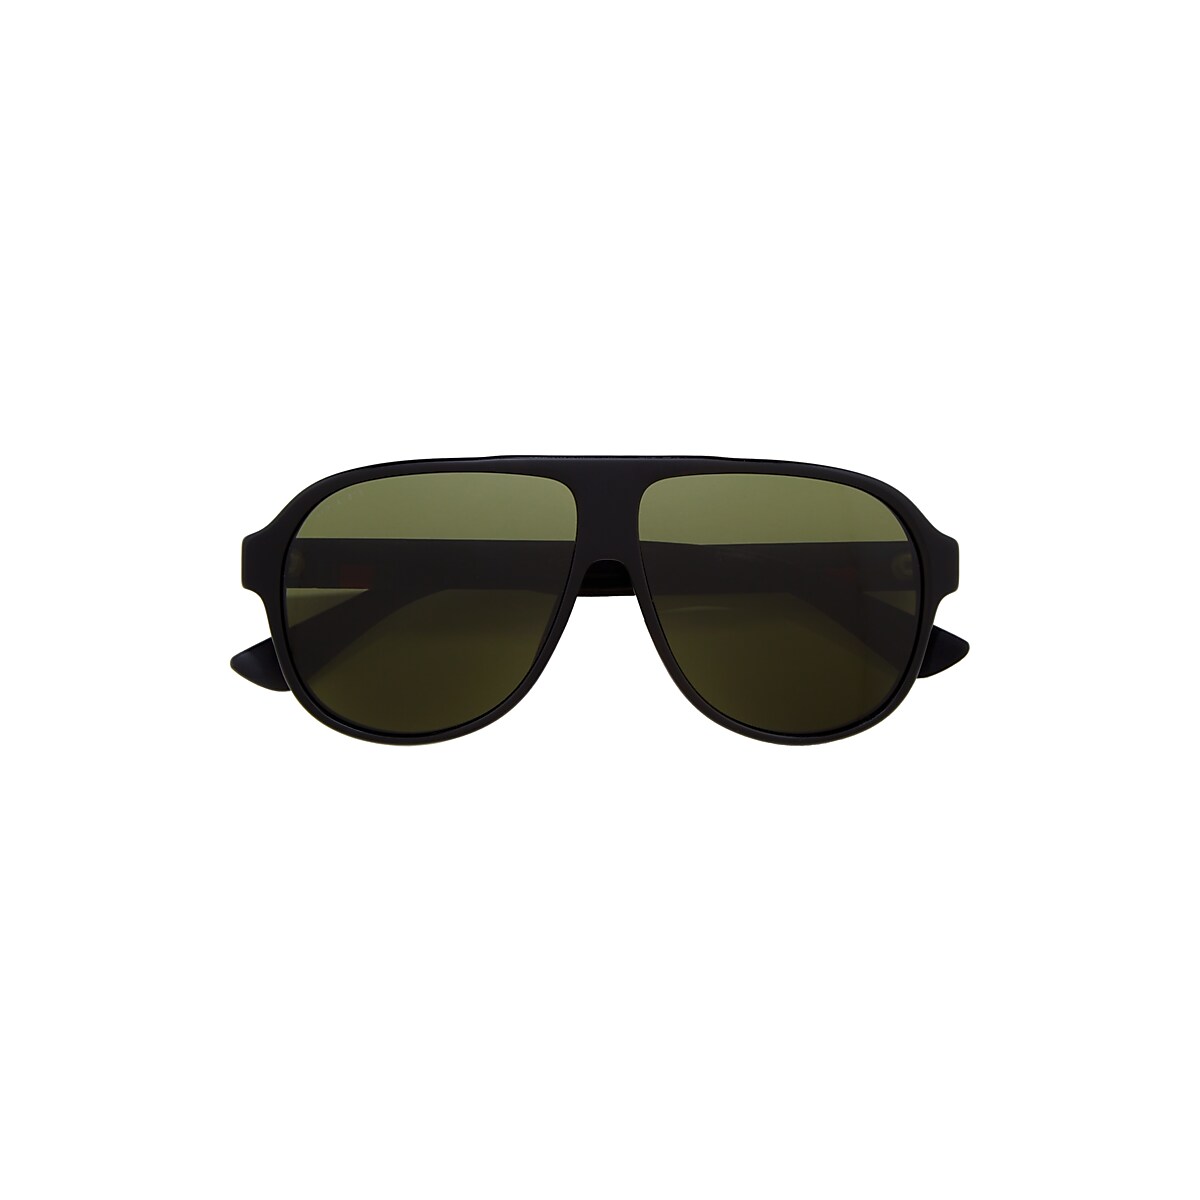 Gucci GG0009S 59 Green & Black Sunglasses | Hut USA